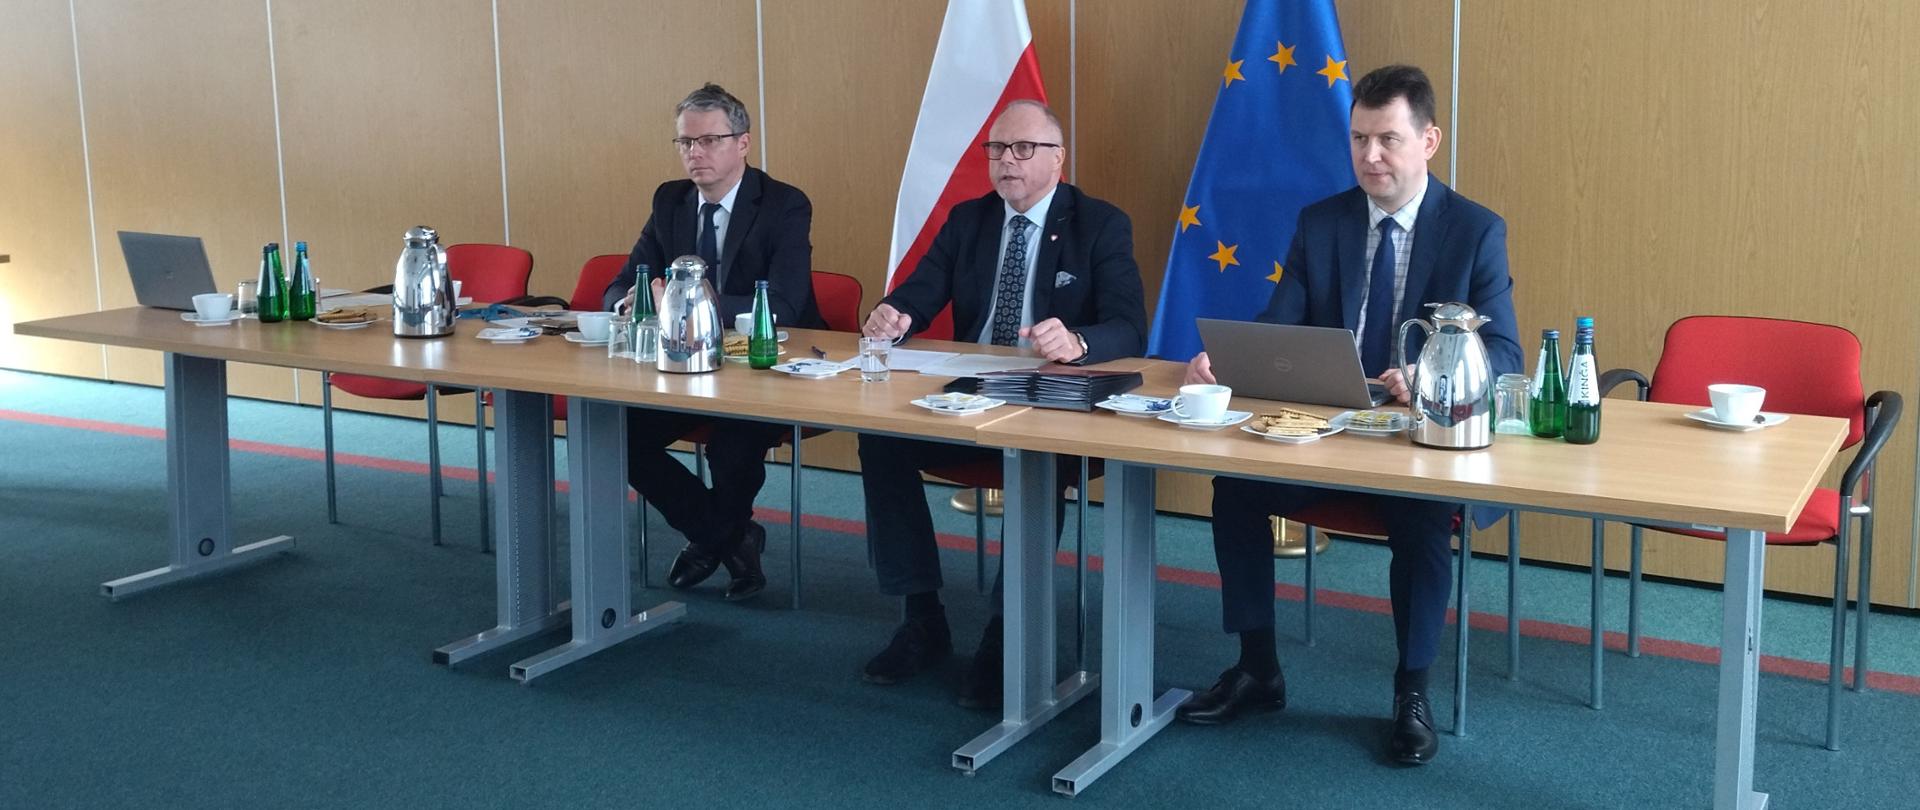 Trzech mężczyzn siedzi przy stole. W środku wiceminister Jacek Protas. Za nimi flagi PL i UE.